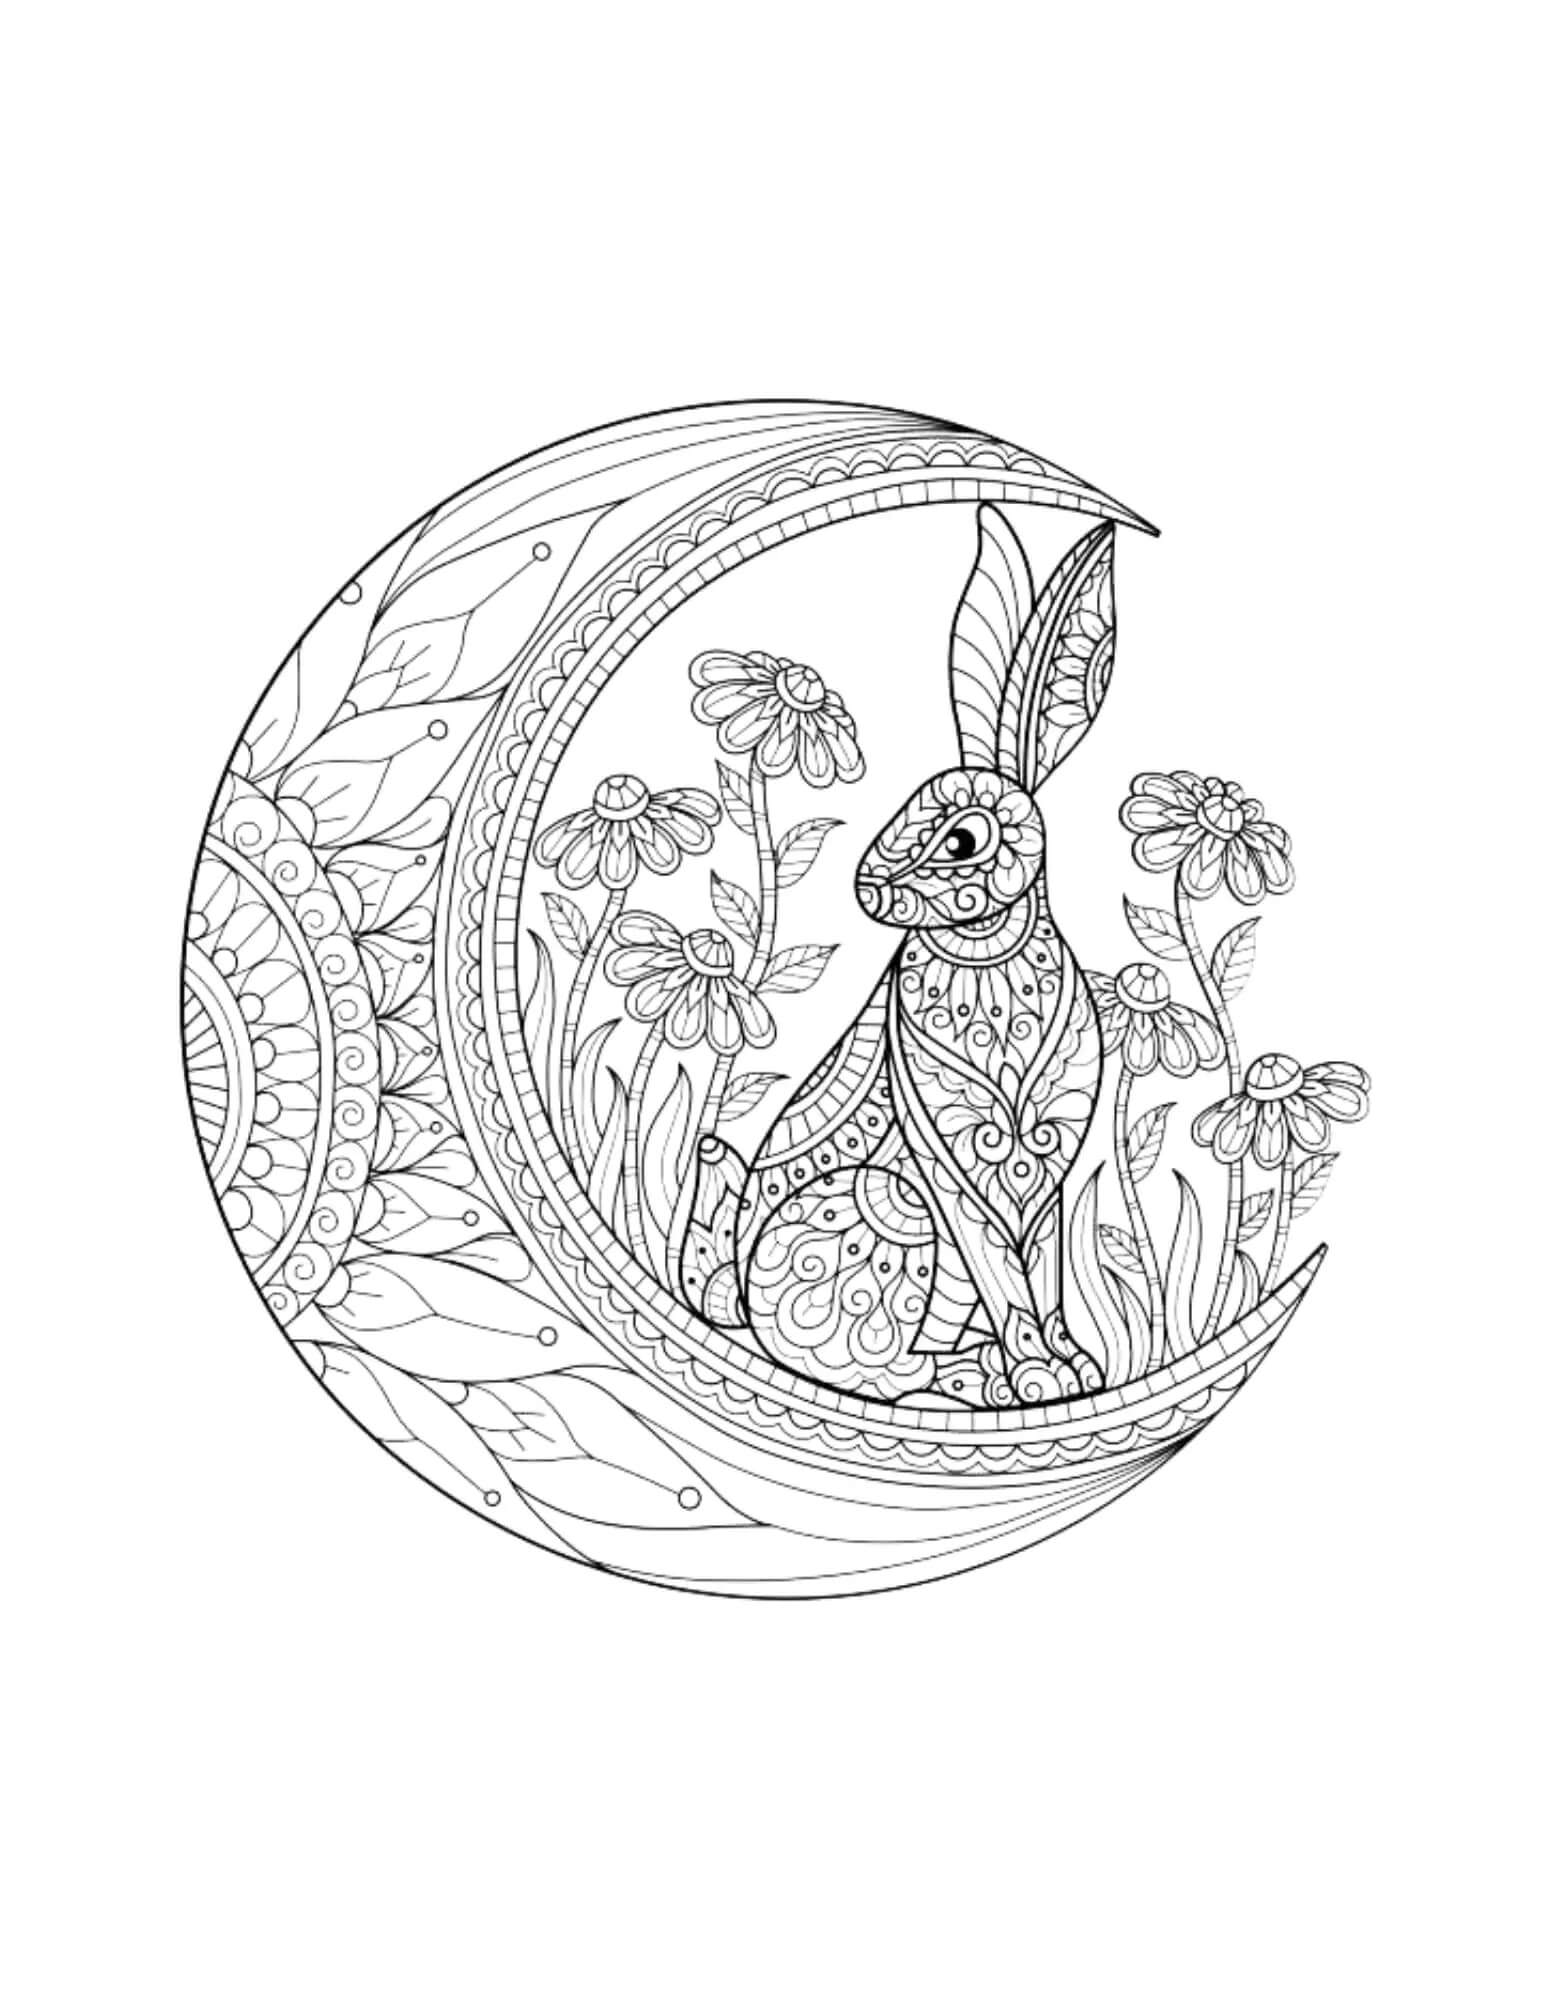 Mandala Rabbit on Moon Coloring Page Mandalas